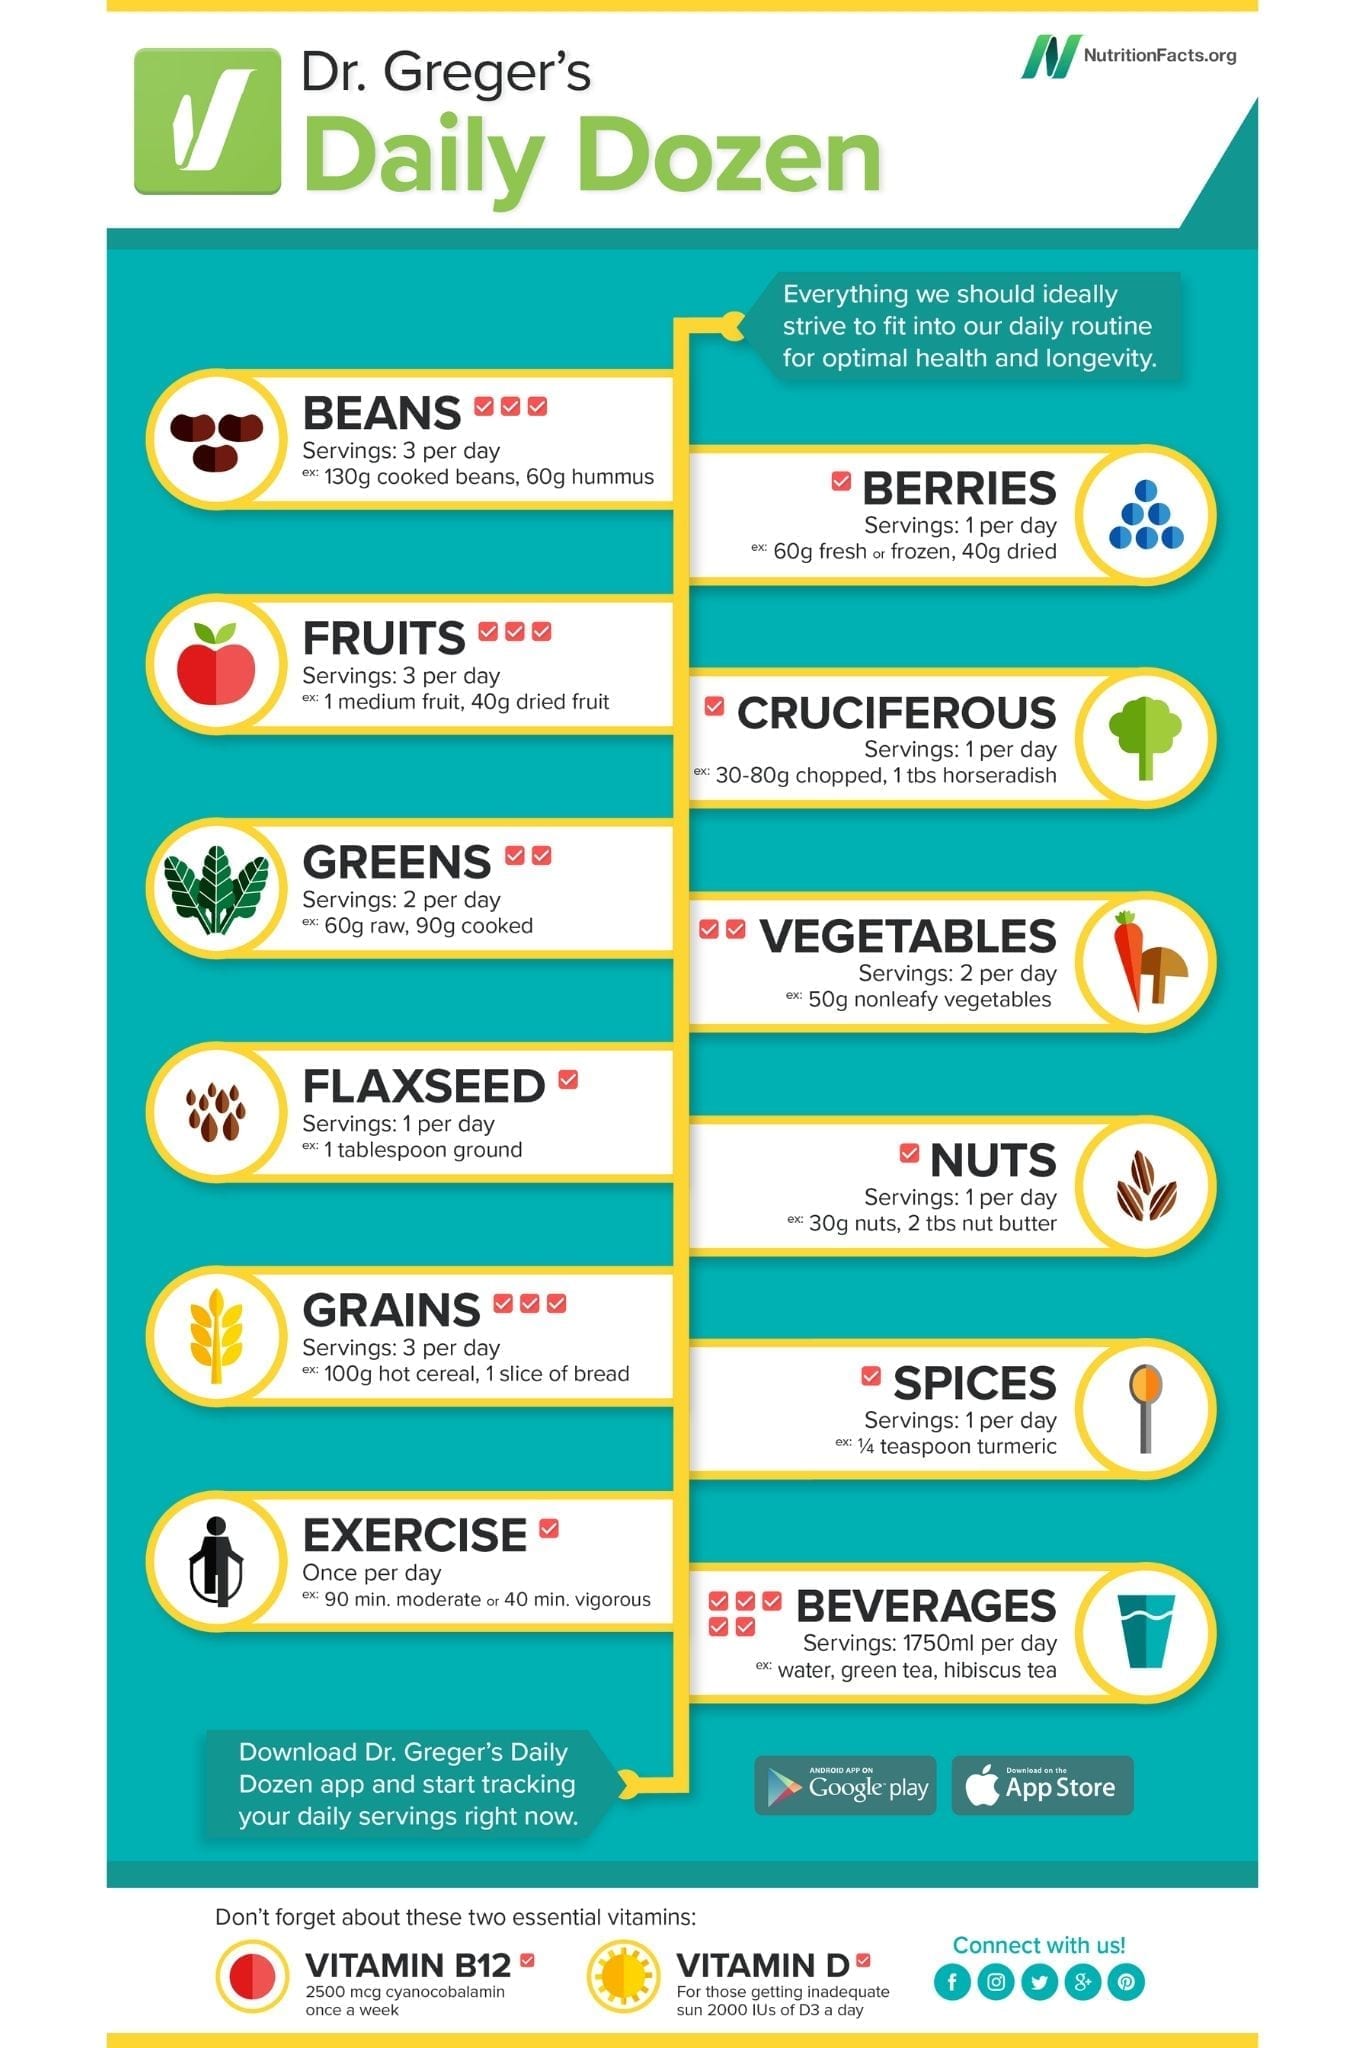 ¿Cuáles son los alimentos más saludables y cuánto debes comer a diario? Consulta la lista de la Docena diaria del Dr. Greger y el sistema de semáforo para obtener el máximo beneficio de su dieta basada en plantas.